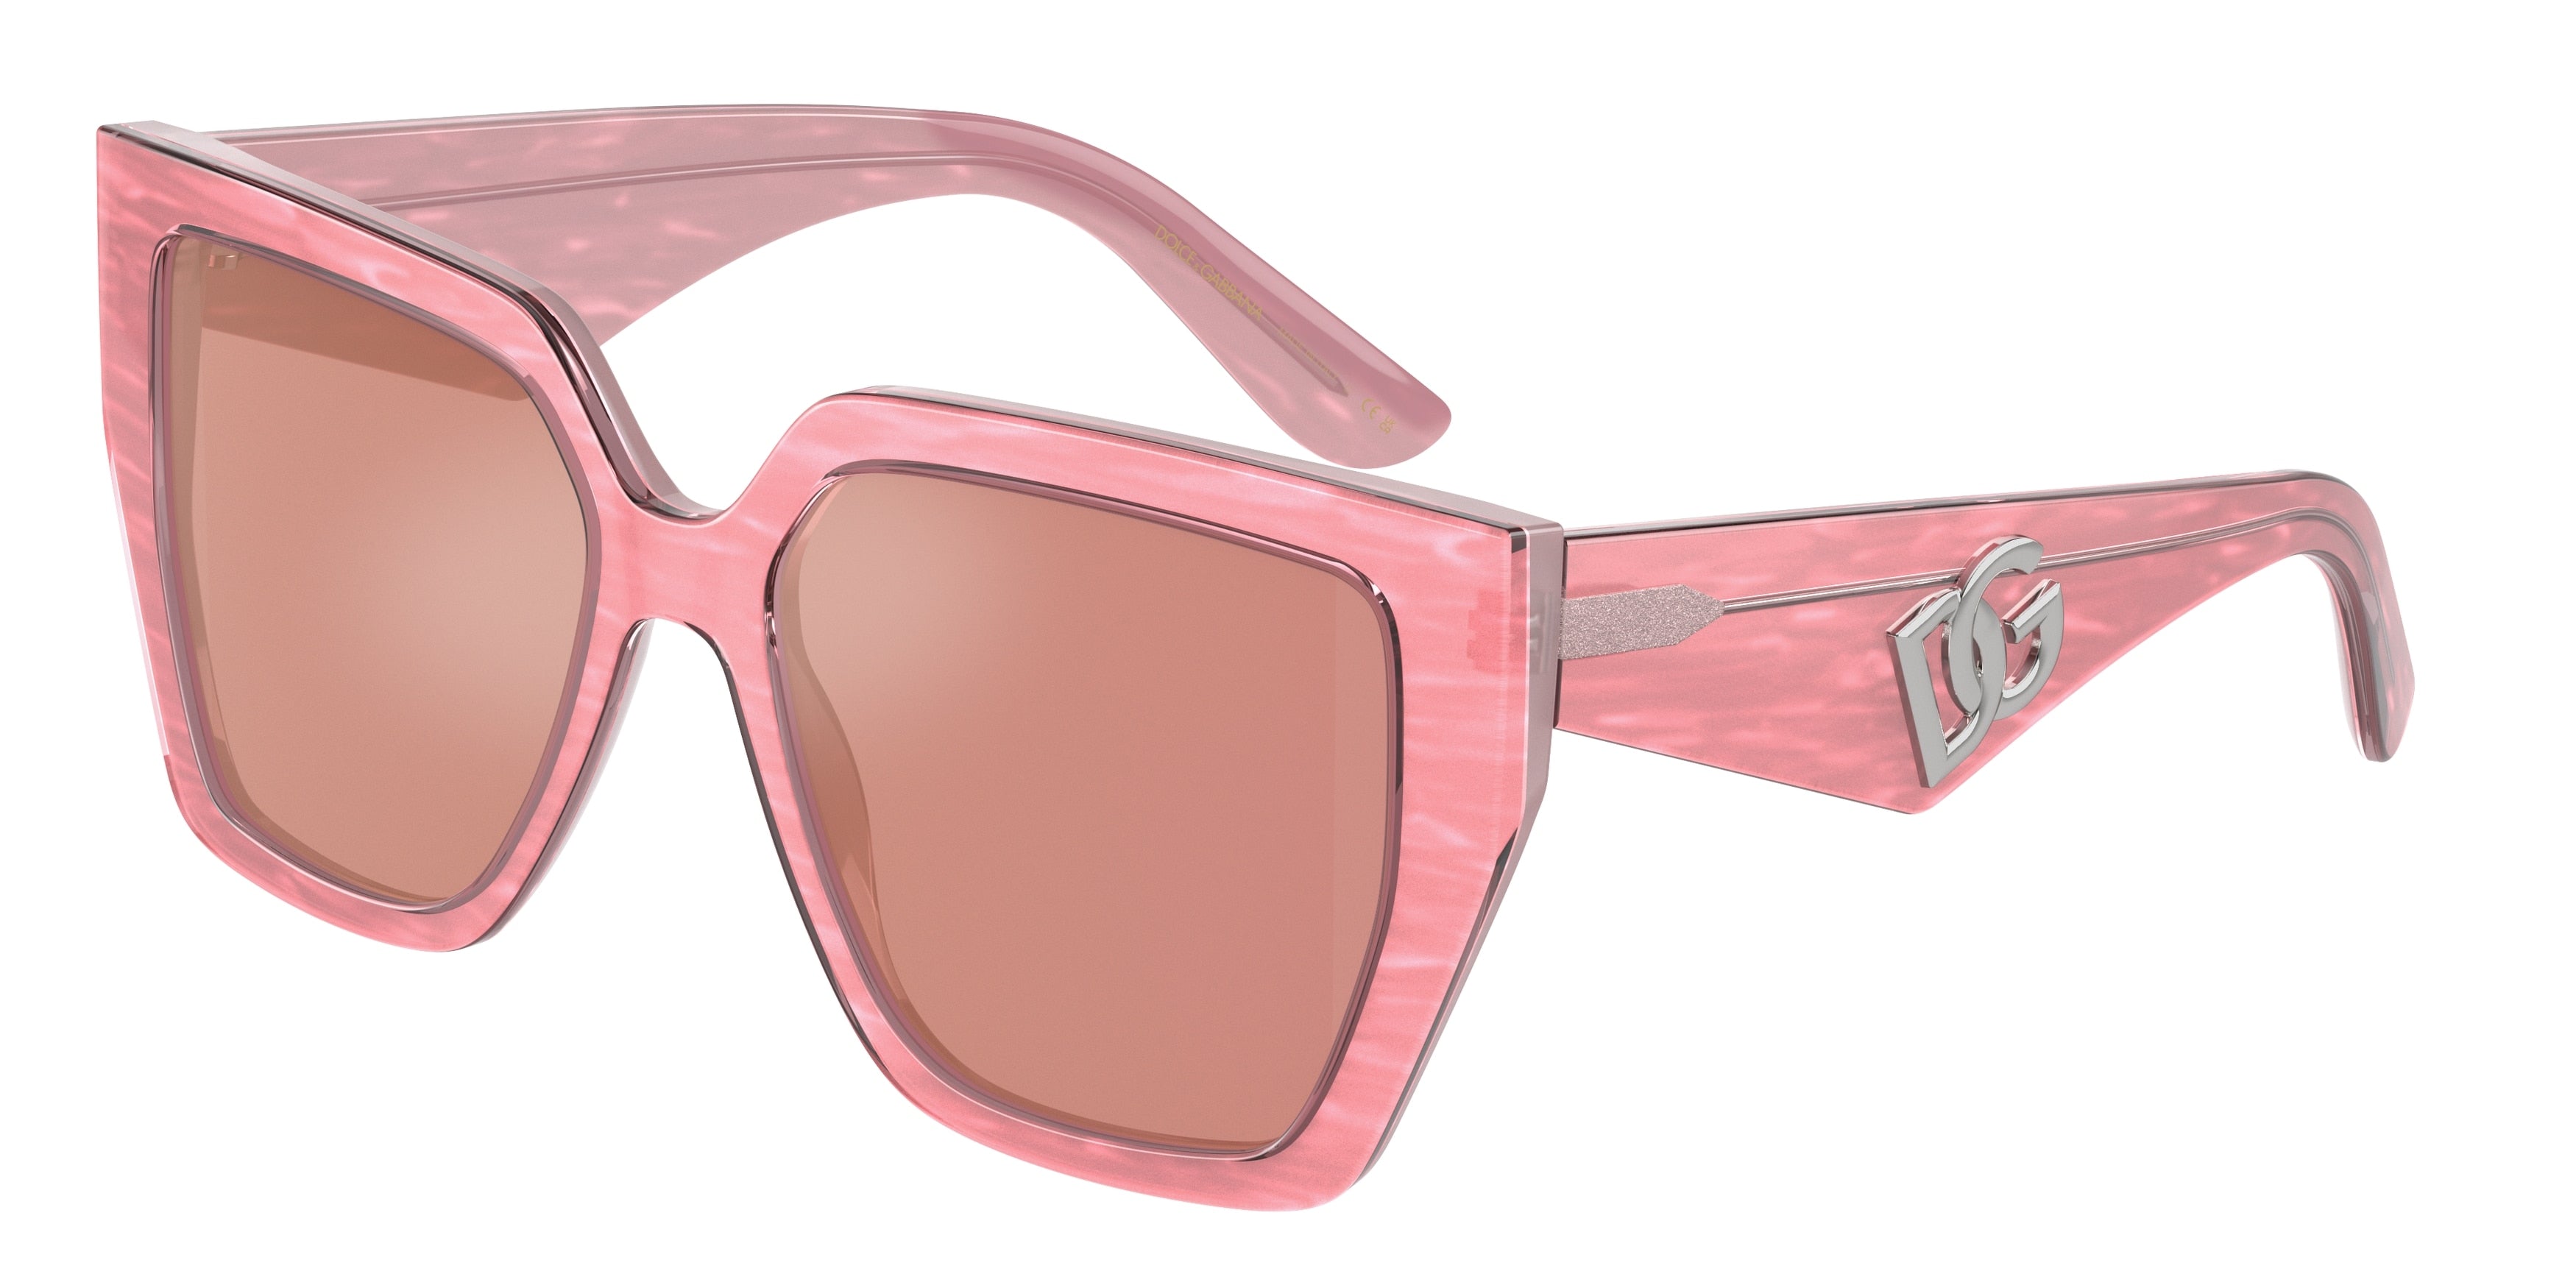 DOLCE & GABBANA DG4438F Square Sunglasses  3405A4-Fleur Pink 55-145-17 - Color Map Pink